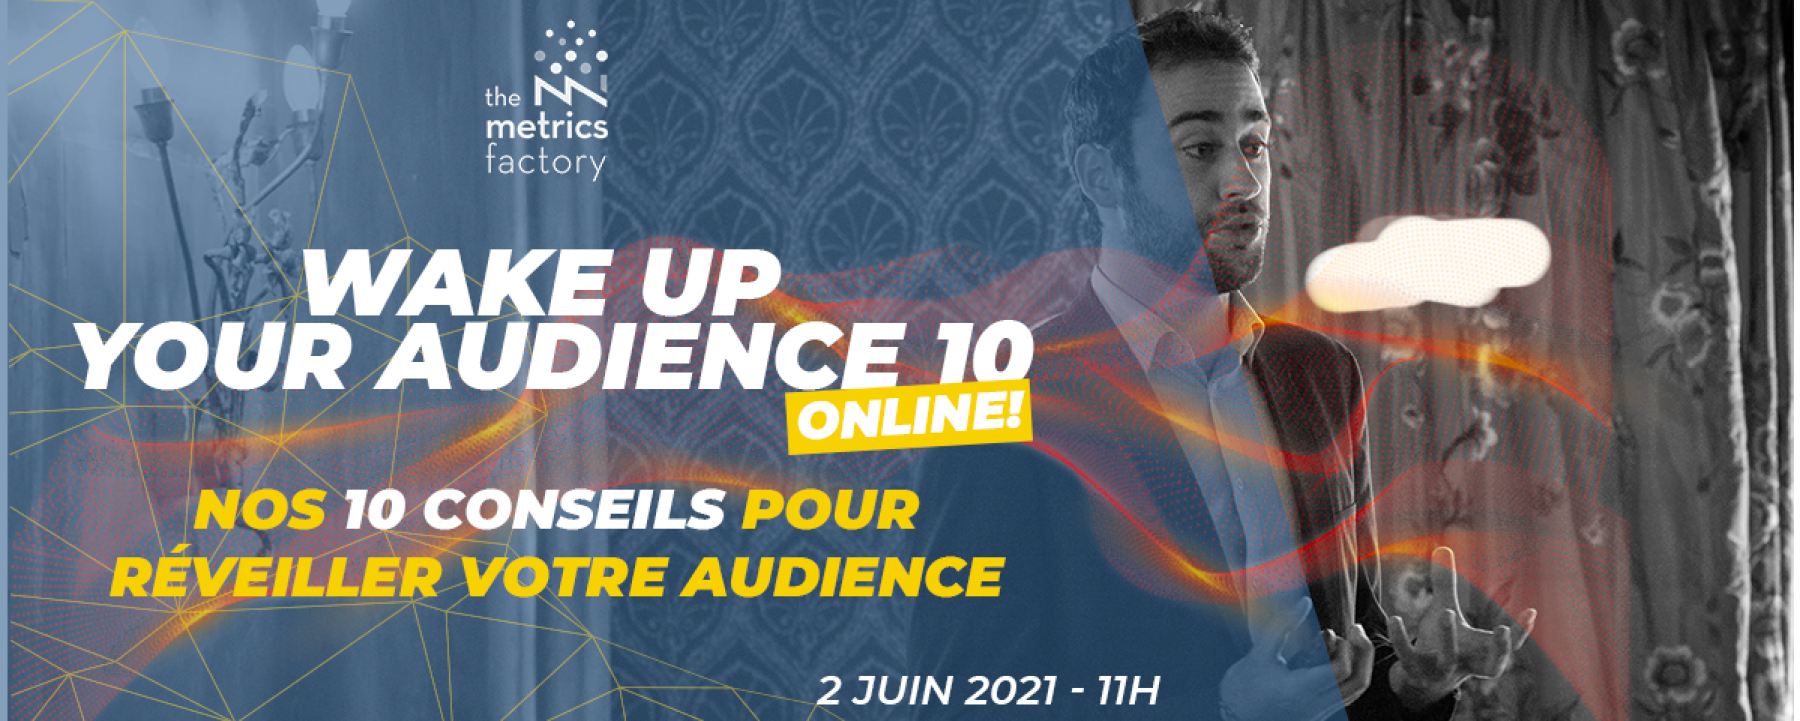 Wake up your Audience X, un événement en ligne organisé le 2 juin 2021 par The Metrics Factory